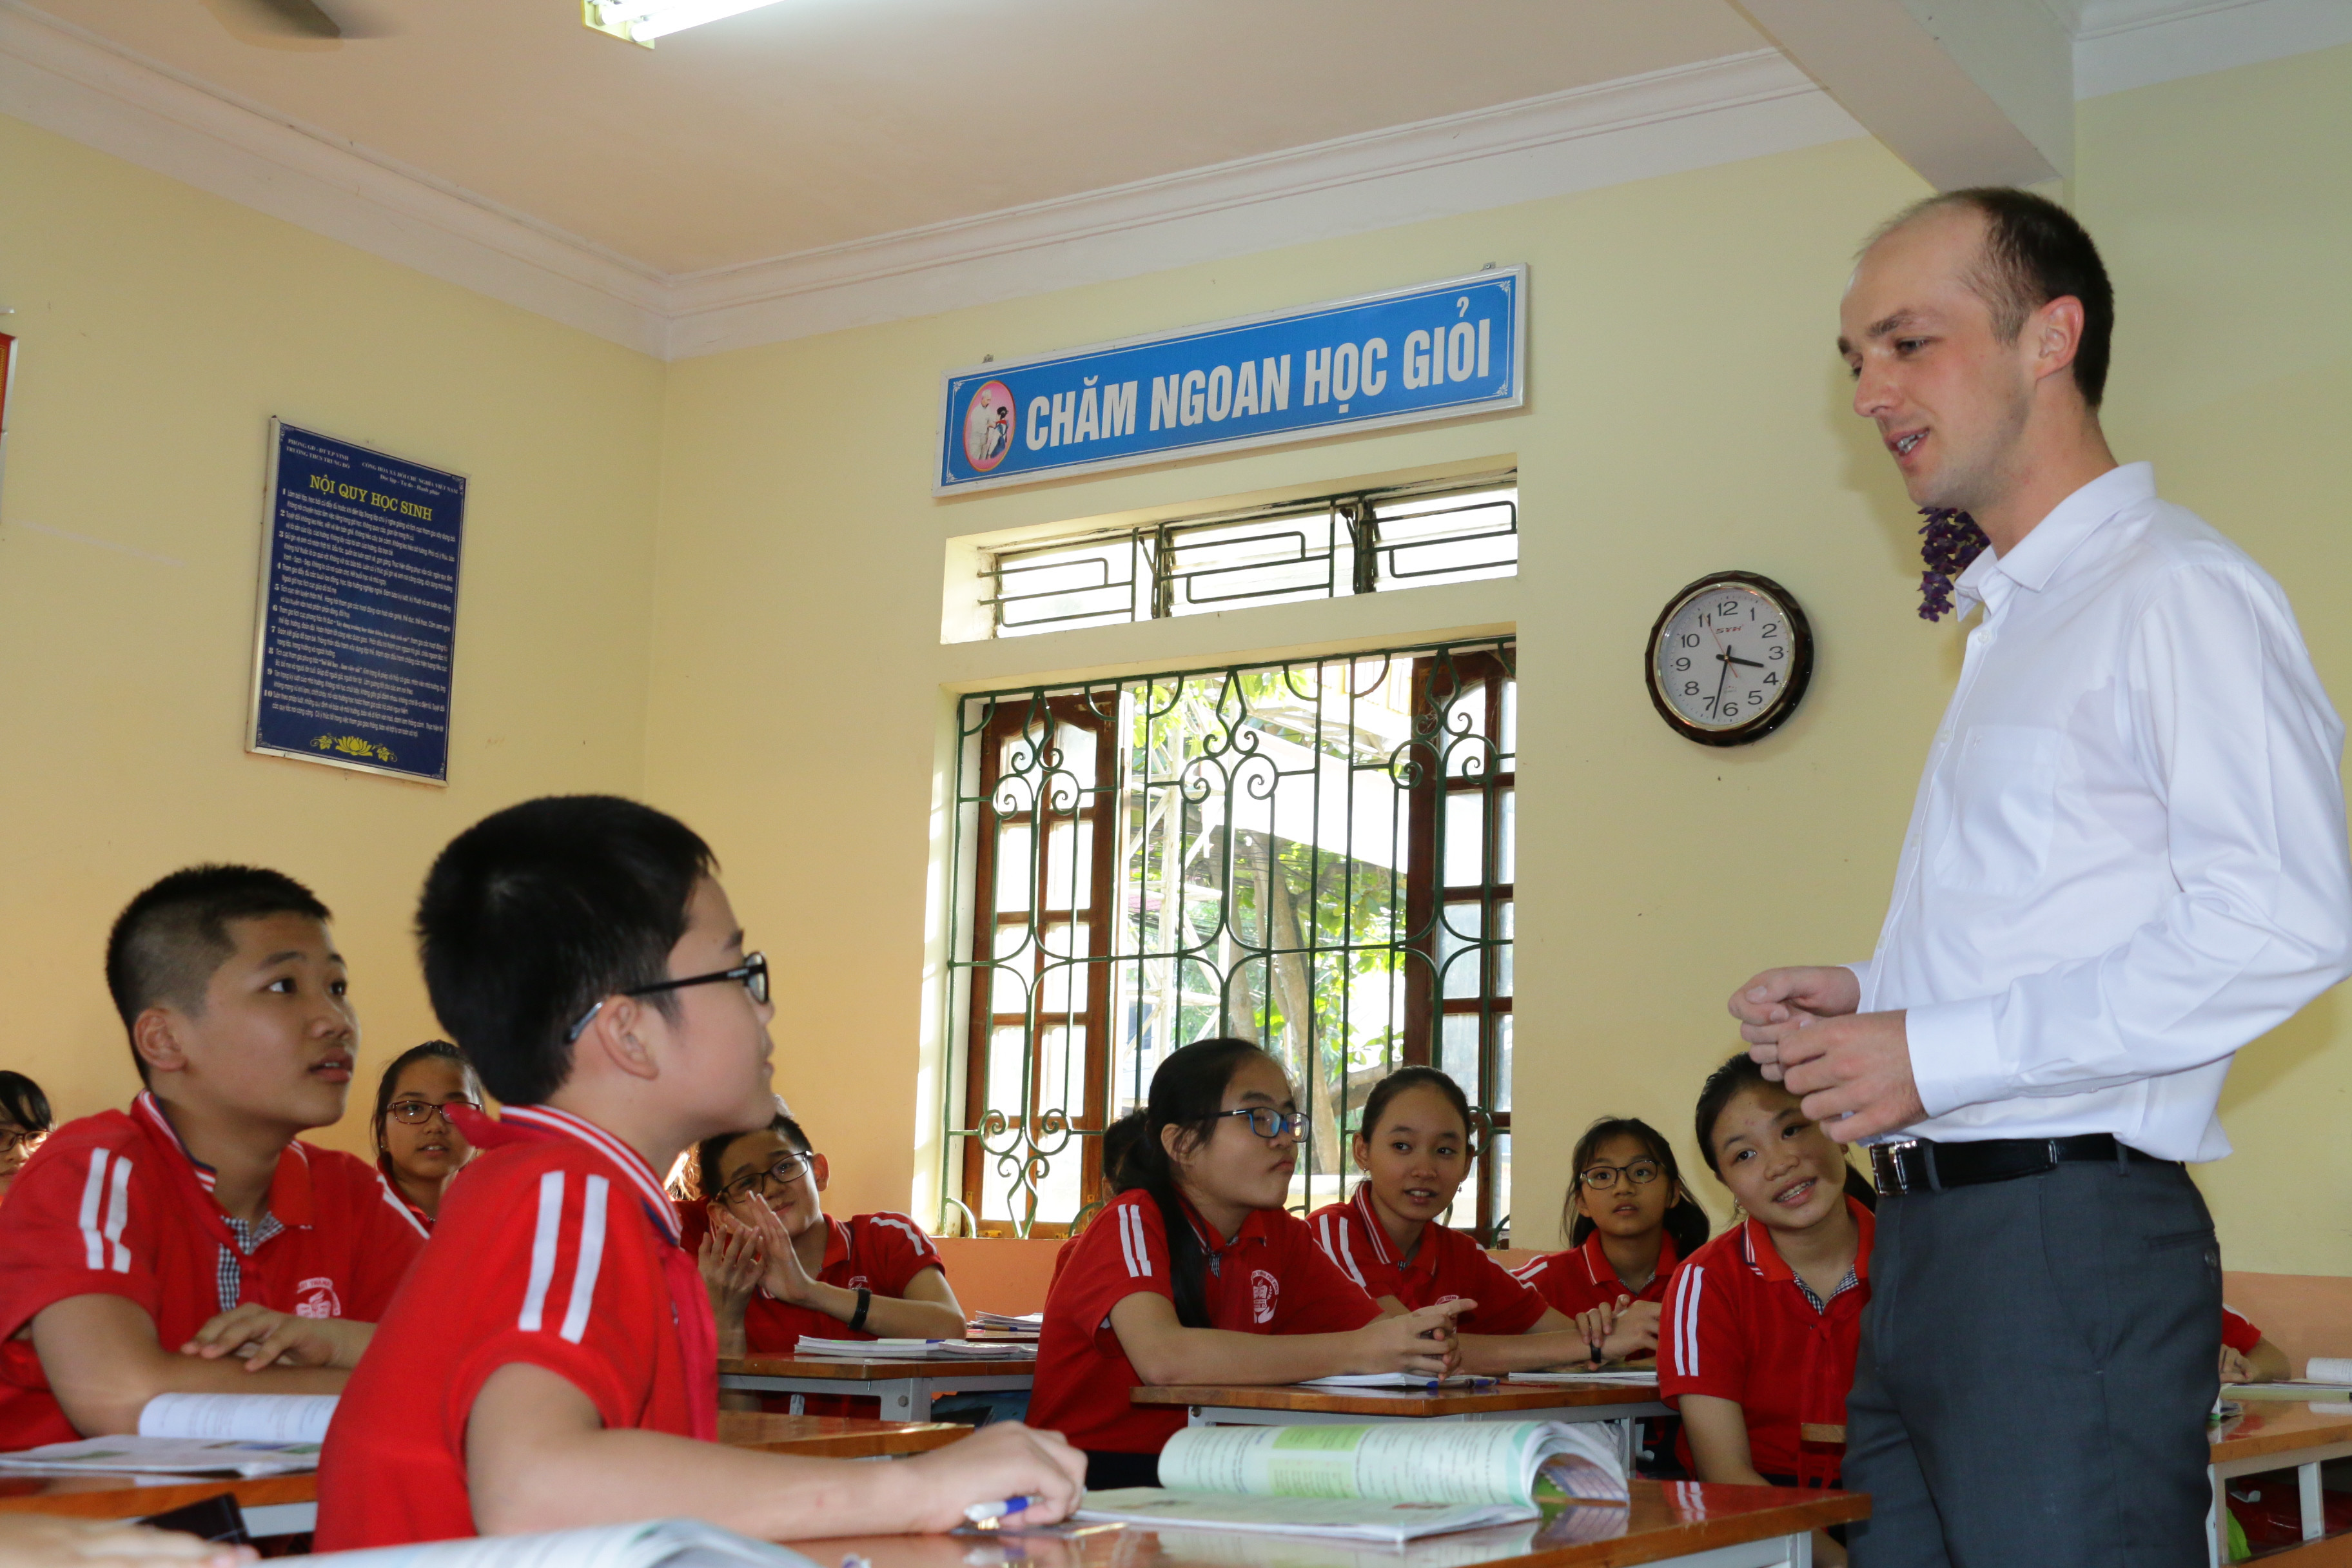 Từ năm học 2017 - 2018, Nghệ An có chủ trương phối hợp với các trung tâm để giáo viên nước ngoài vào dạy ở các trường phổ thông. ảnh: Mỹ Hà